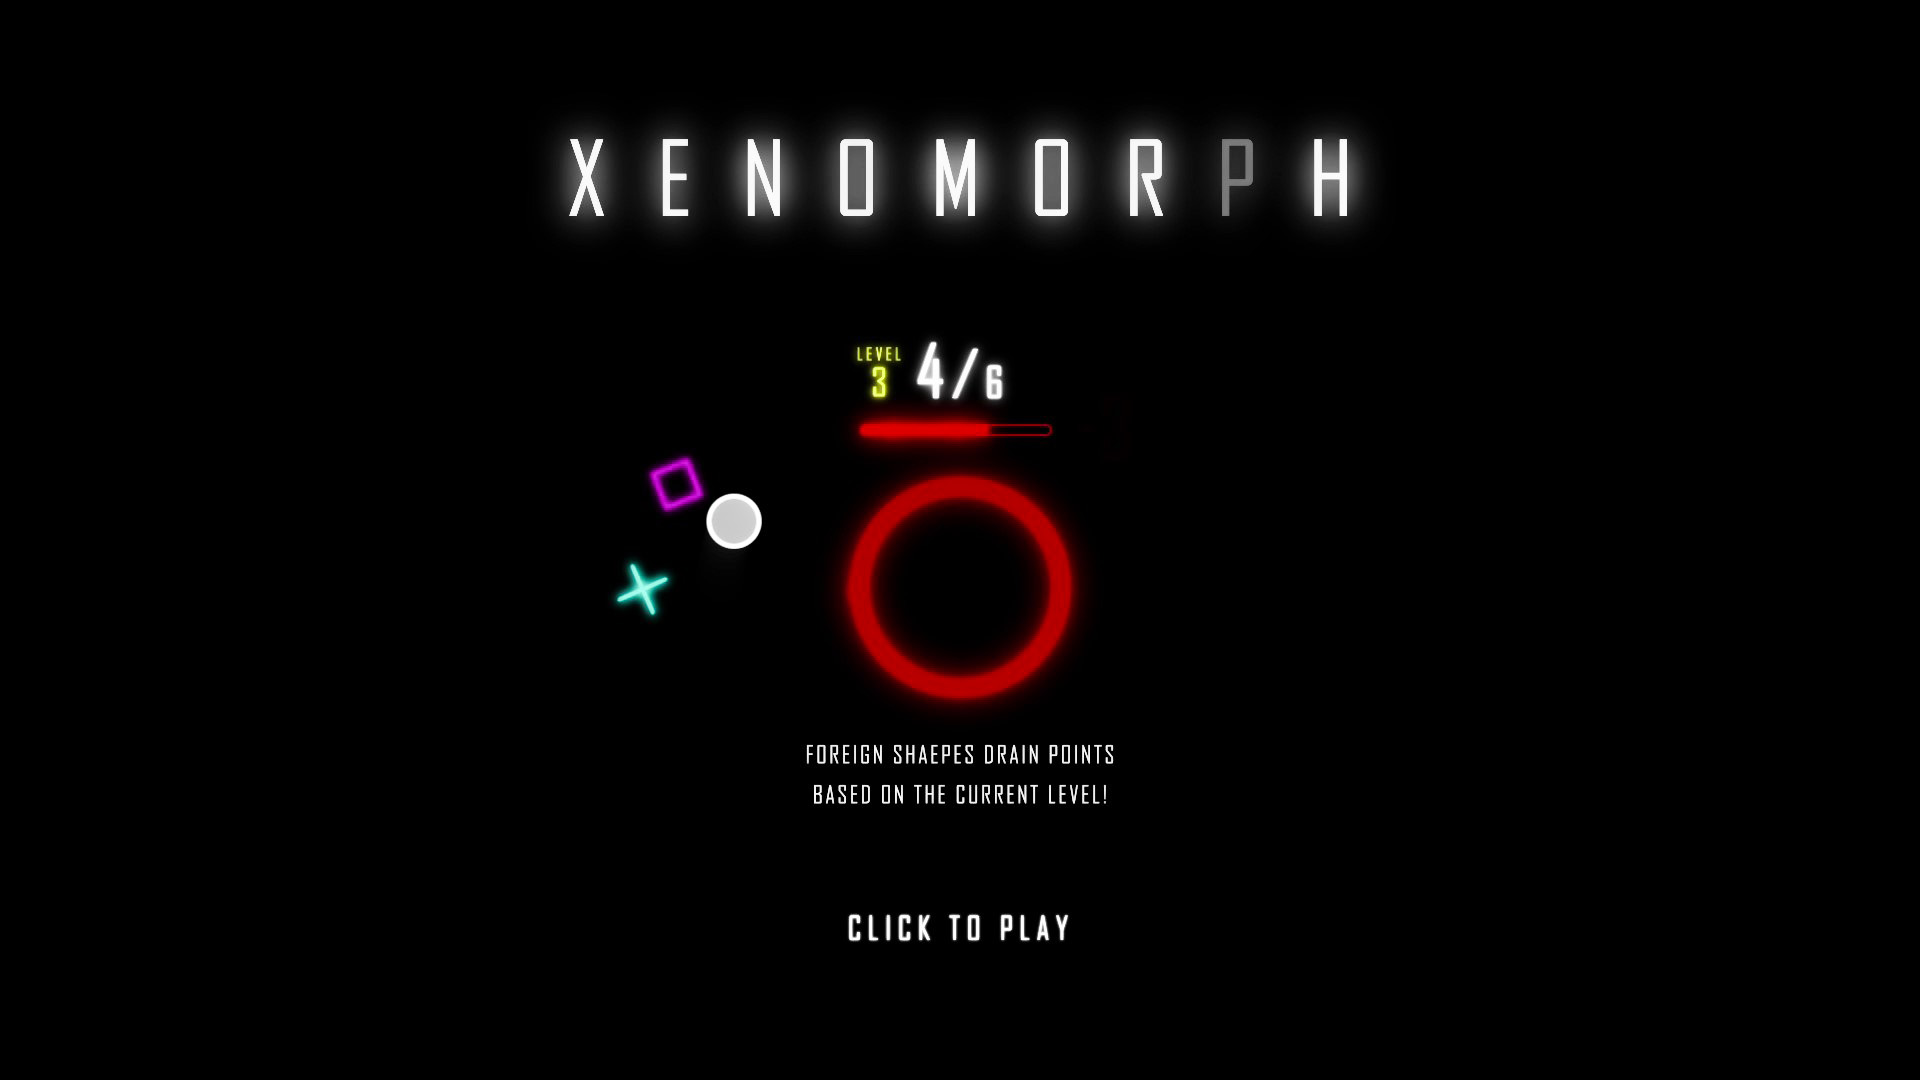 XENOMORPH